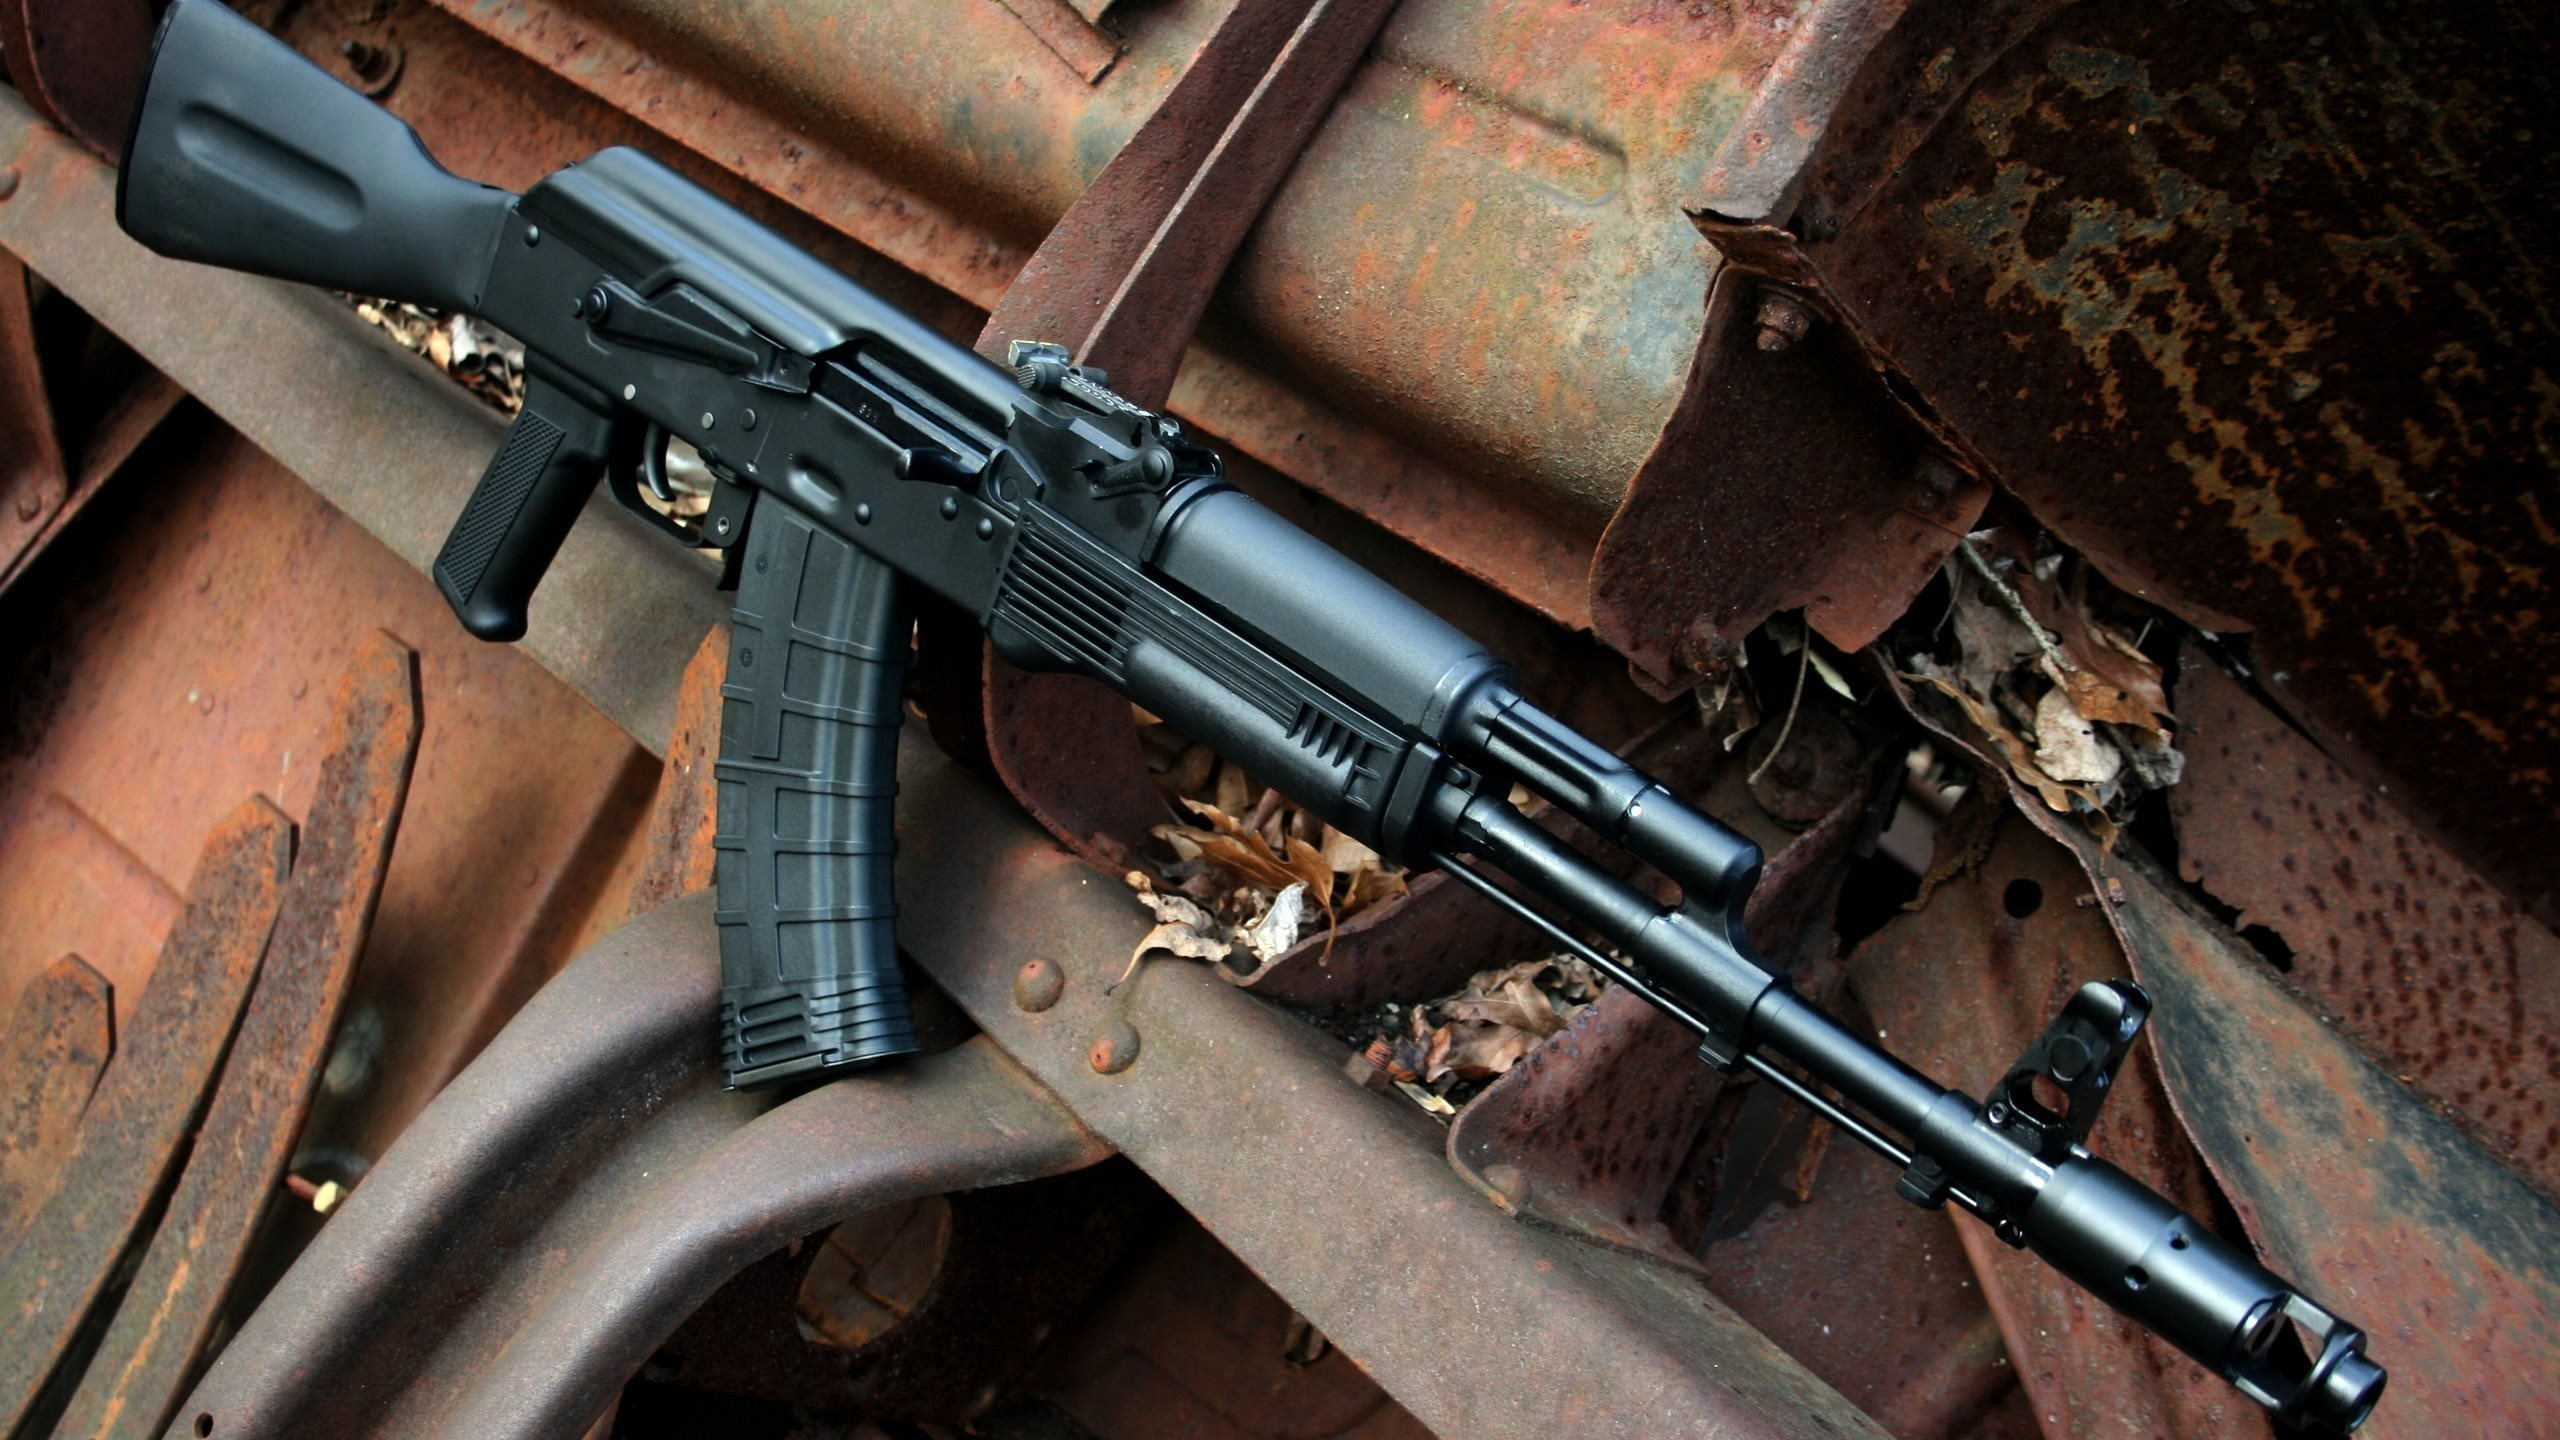 Ak-74, 枪, 枪支, 步枪, 触发器 壁纸 2560x1440 允许